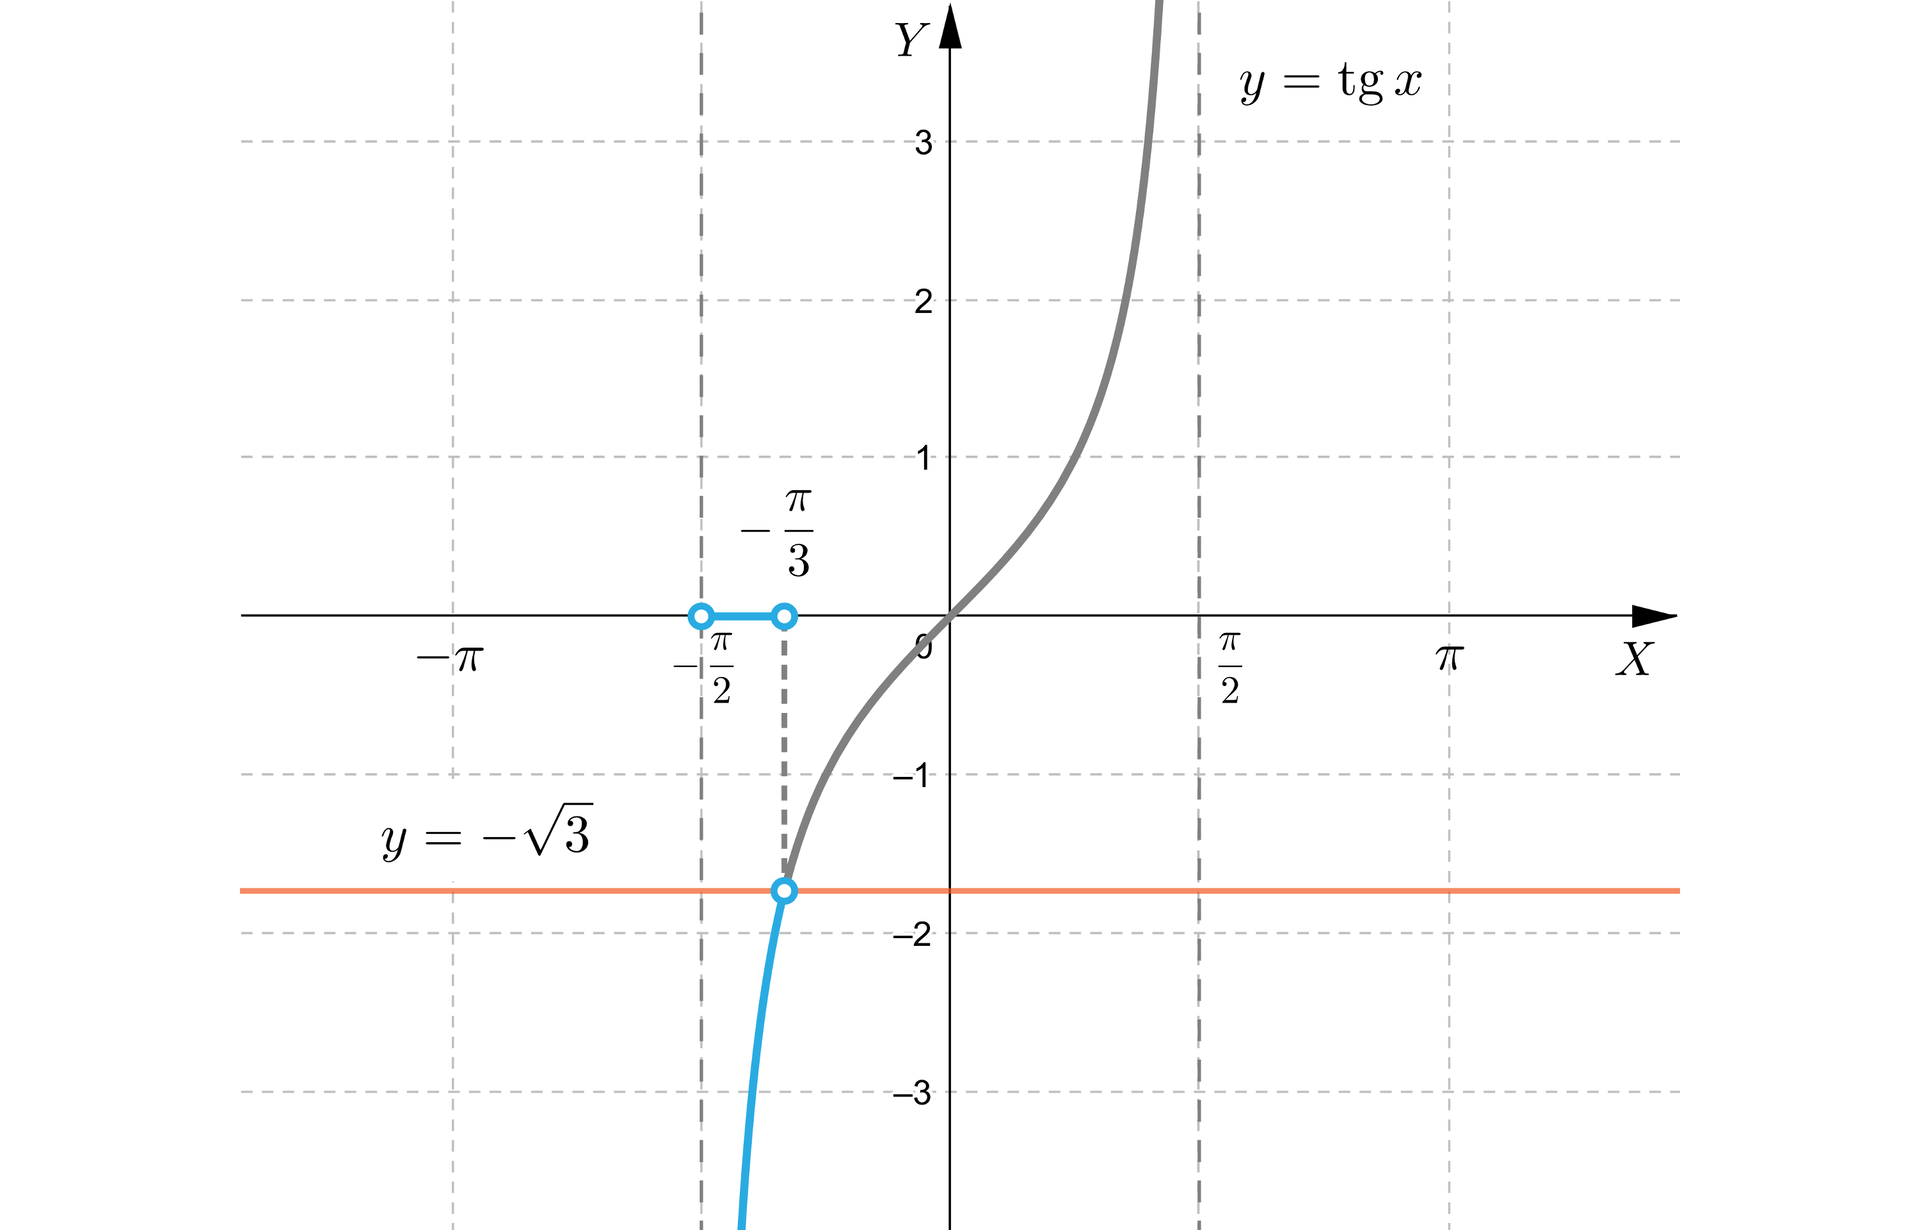 Rysunek przedstawia układ współrzędnych z poziomą osią X od minus pi do pi oraz z pionową osią  Y od minus trzech do trzech. Na płaszczyźnie narysowany jest wykres funkcji tangens x na  dziedzinie -π2;π2.  Na płaszczyźnie zaznaczone są trzy niezamalowane punkty. Punkt o współrzędnych  -π2;0 oraz punkt o  współrzędnych -π3;0. Punkty te połączone są linią i tworzą odcinek obustronnie otwarty. Na płaszczyźnie narysowano również poziomą prostą opisaną wzorem  y=-3. Trzecim wyróżnionym punktem punkt przecięcia prostej  z wykresem funkcji tangens. Punkt przecięcia jest również niezamalowany i ma współrzędne -π3;-3. Jest on połączony z punktem o współrzędnych -π3;0  pionową linią przerywaną. Fragment wykresu funkcji tangens od minus nieskończoności do punktu przecięcia z prostą jest pogrubiony.